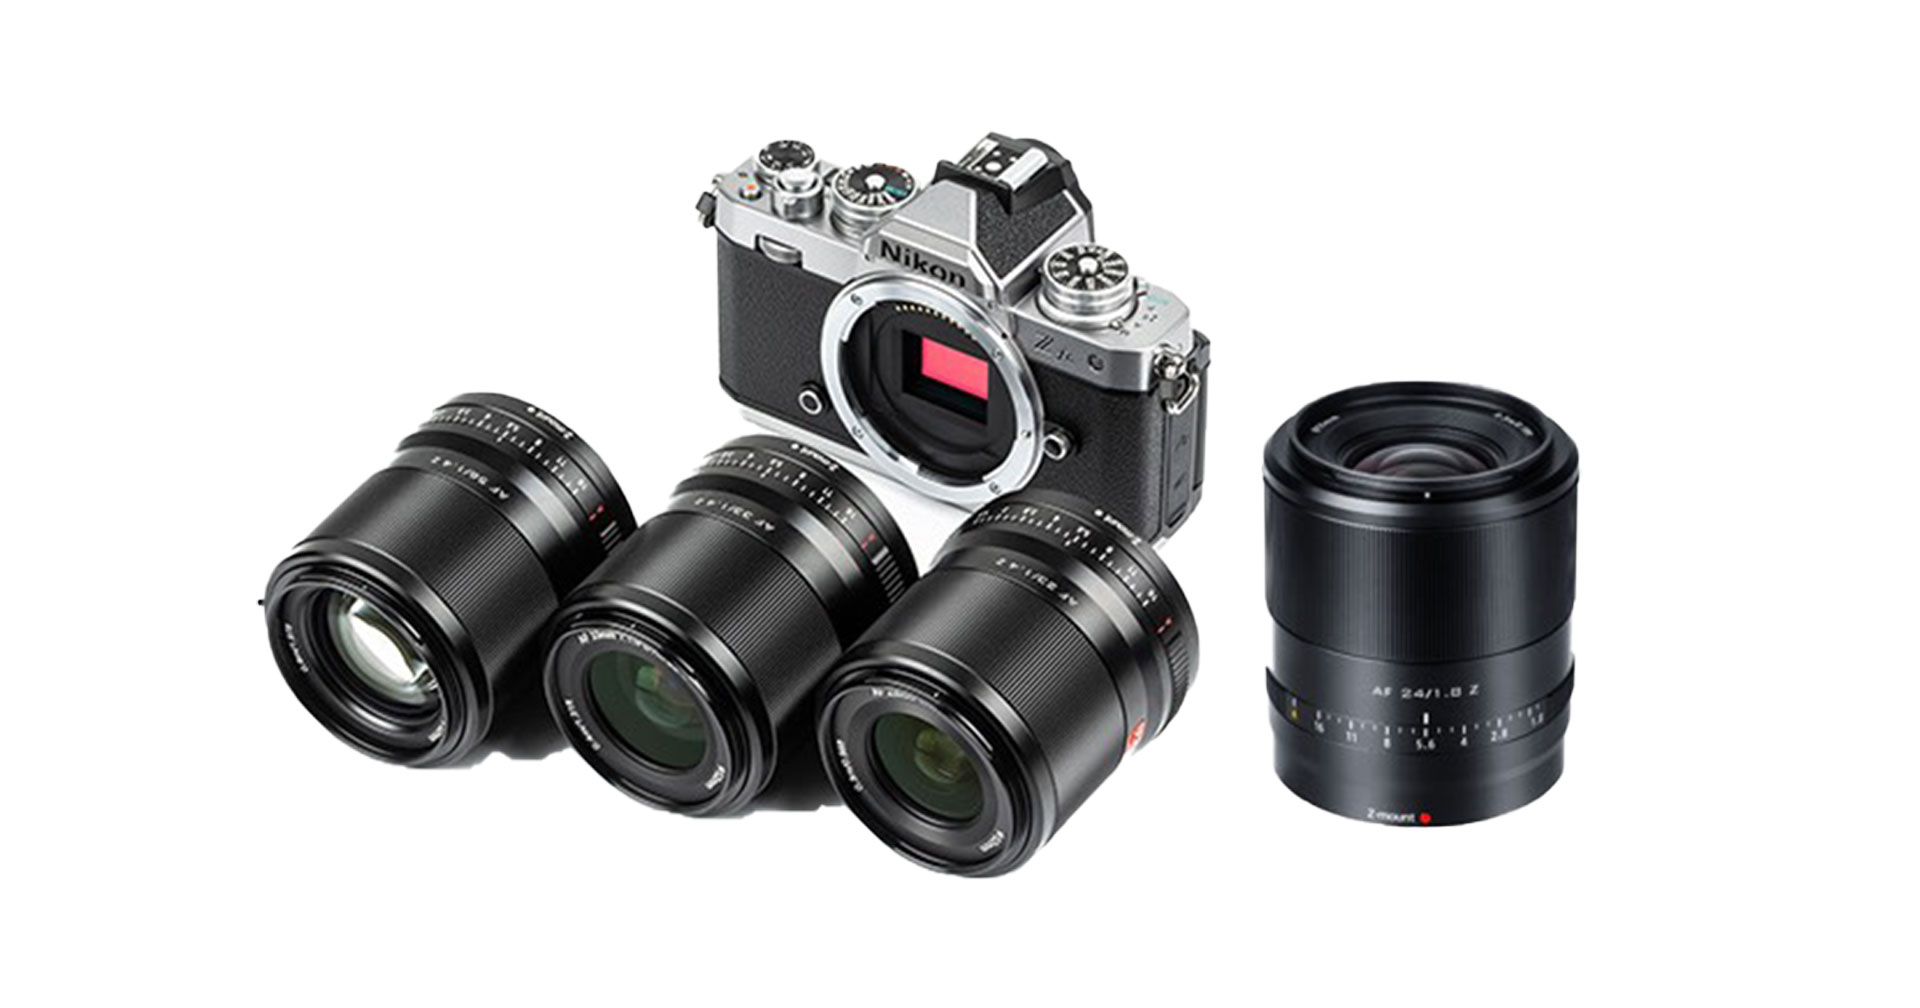 Viltrox ปล่อยเฟิร์มแวร์ใหม่ให้เลนส์ AF เมาท์ Nikon Z ปรับปรุงความไวโฟกัส